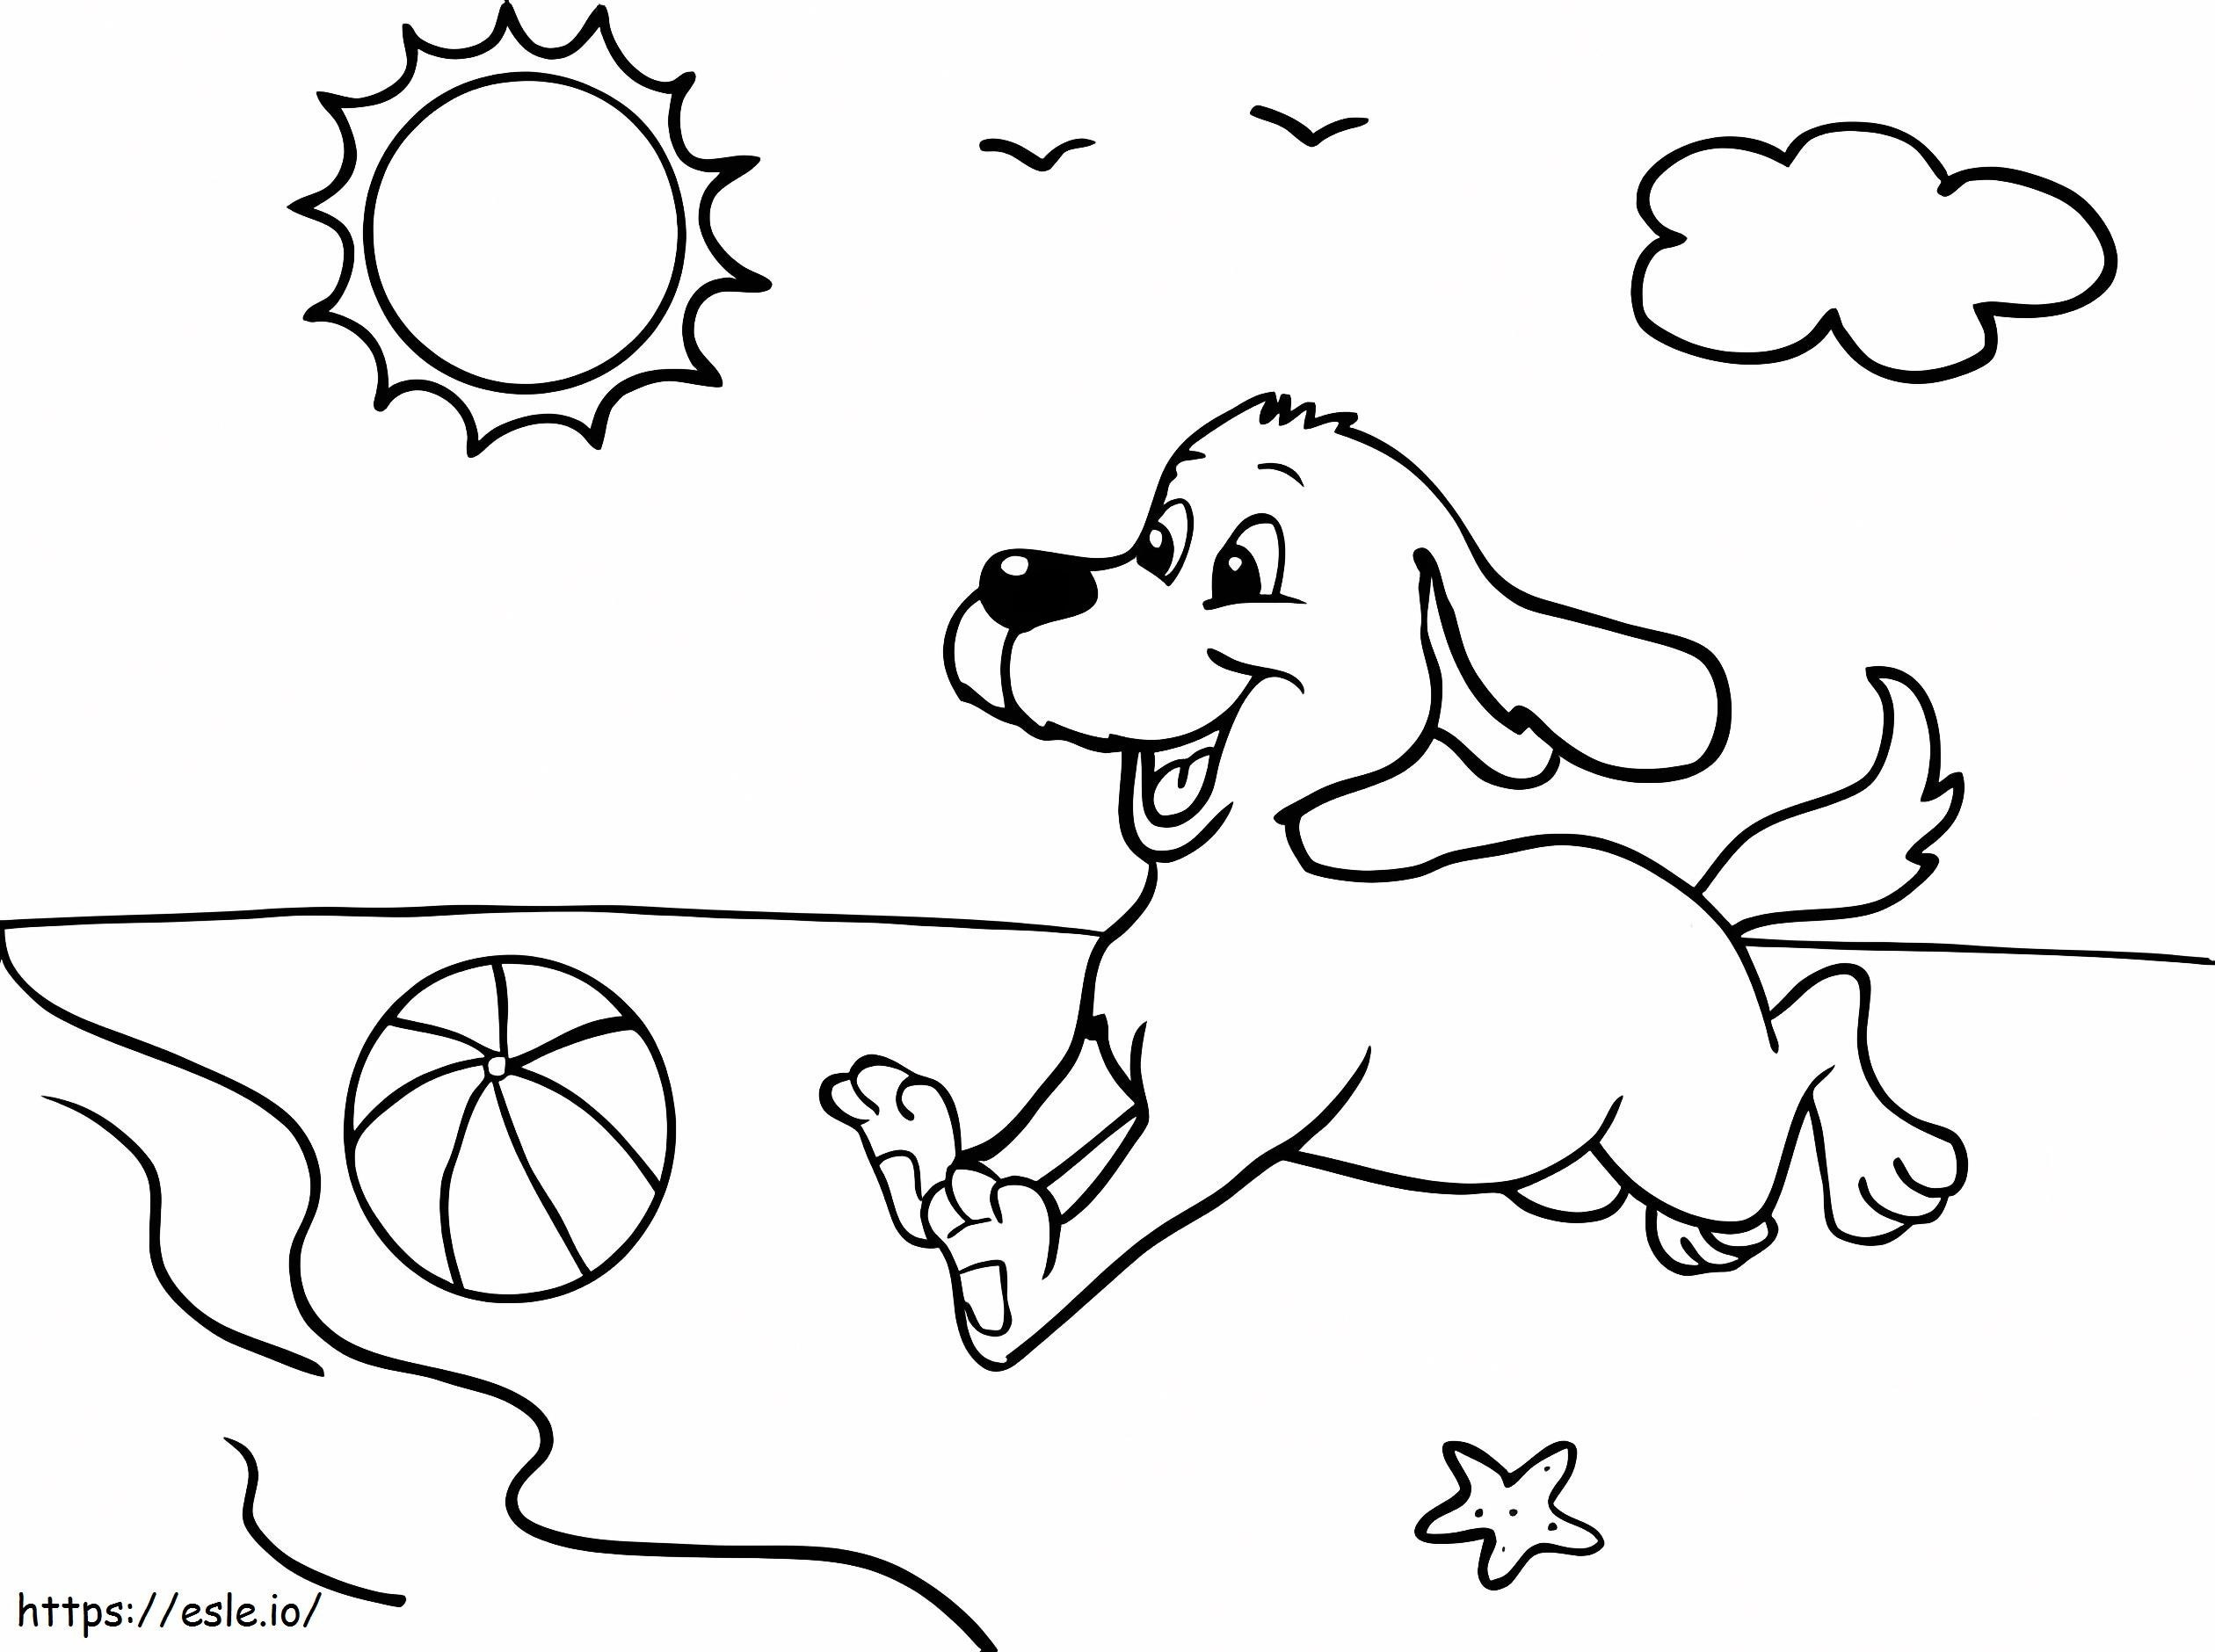 Câine care se joacă cu mingea pe plajă de colorat